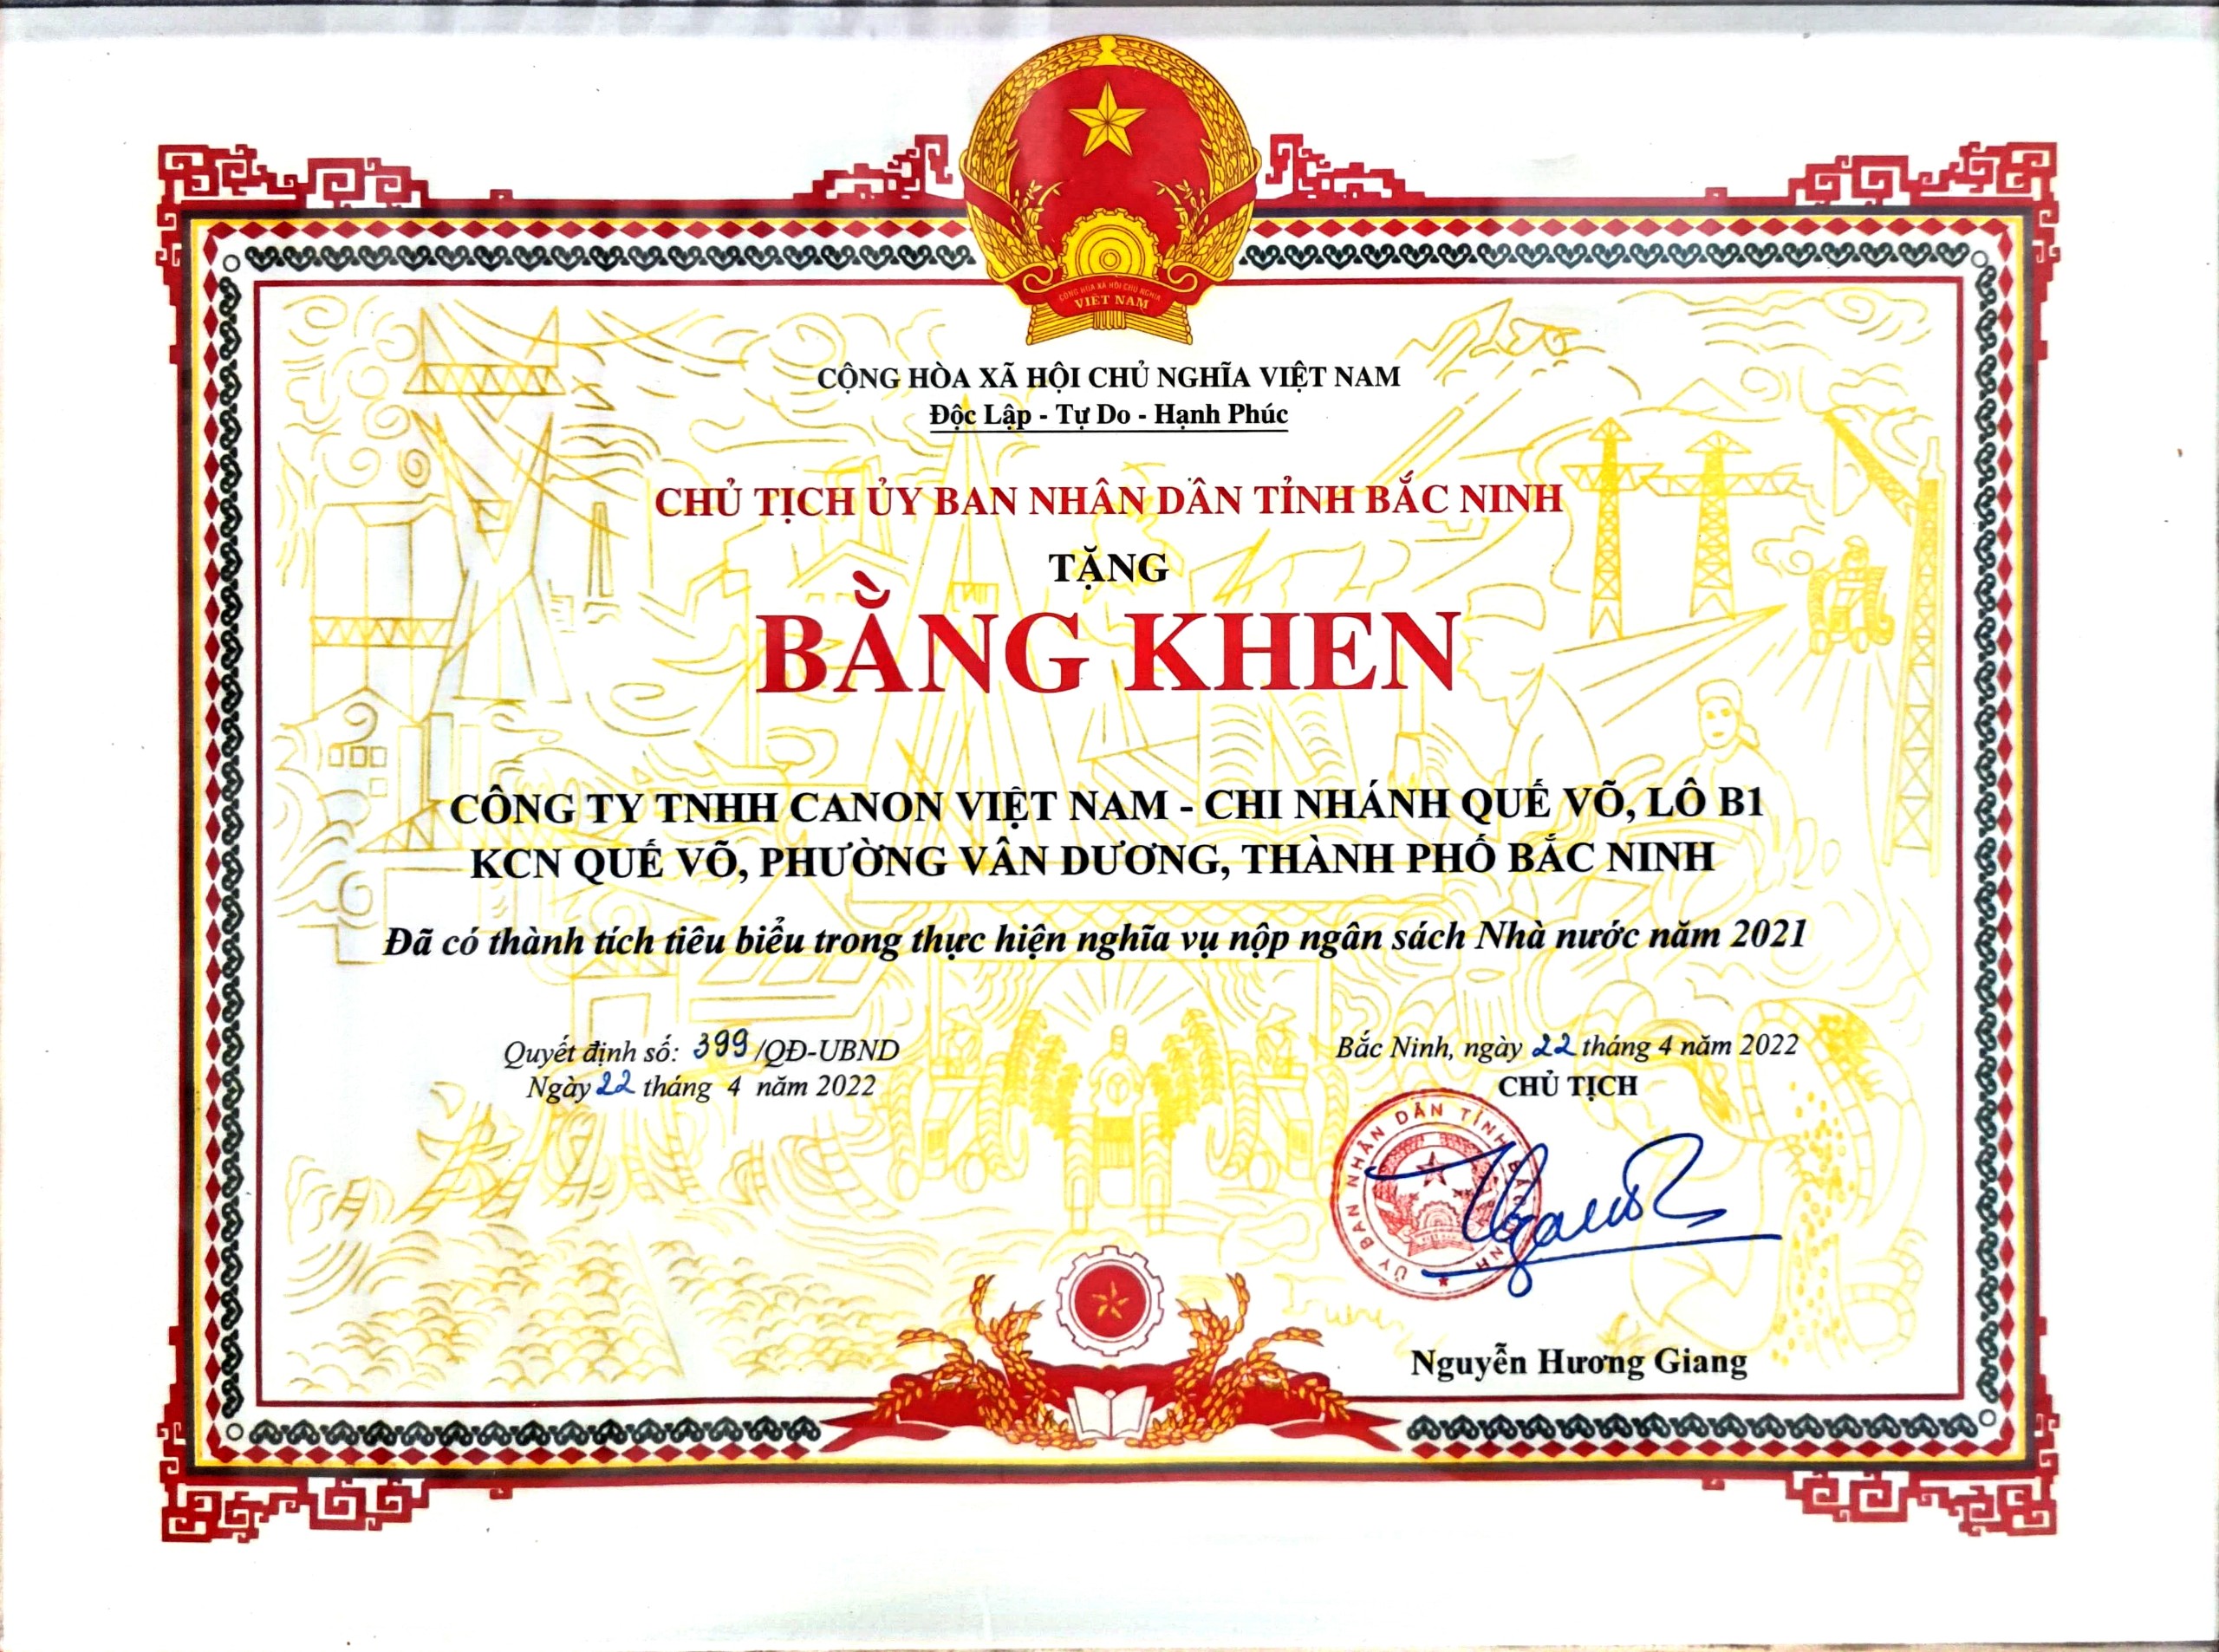 Nhận bằng khen của Chủ tịch UBND tỉnh Bắc Ninh cho Nhà máy Quế Võ vì đã có thành tích tiêu biểu trong thực hiện nghĩa vụ nộp Ngân sách Nhà nước năm 2021 (04/2022)